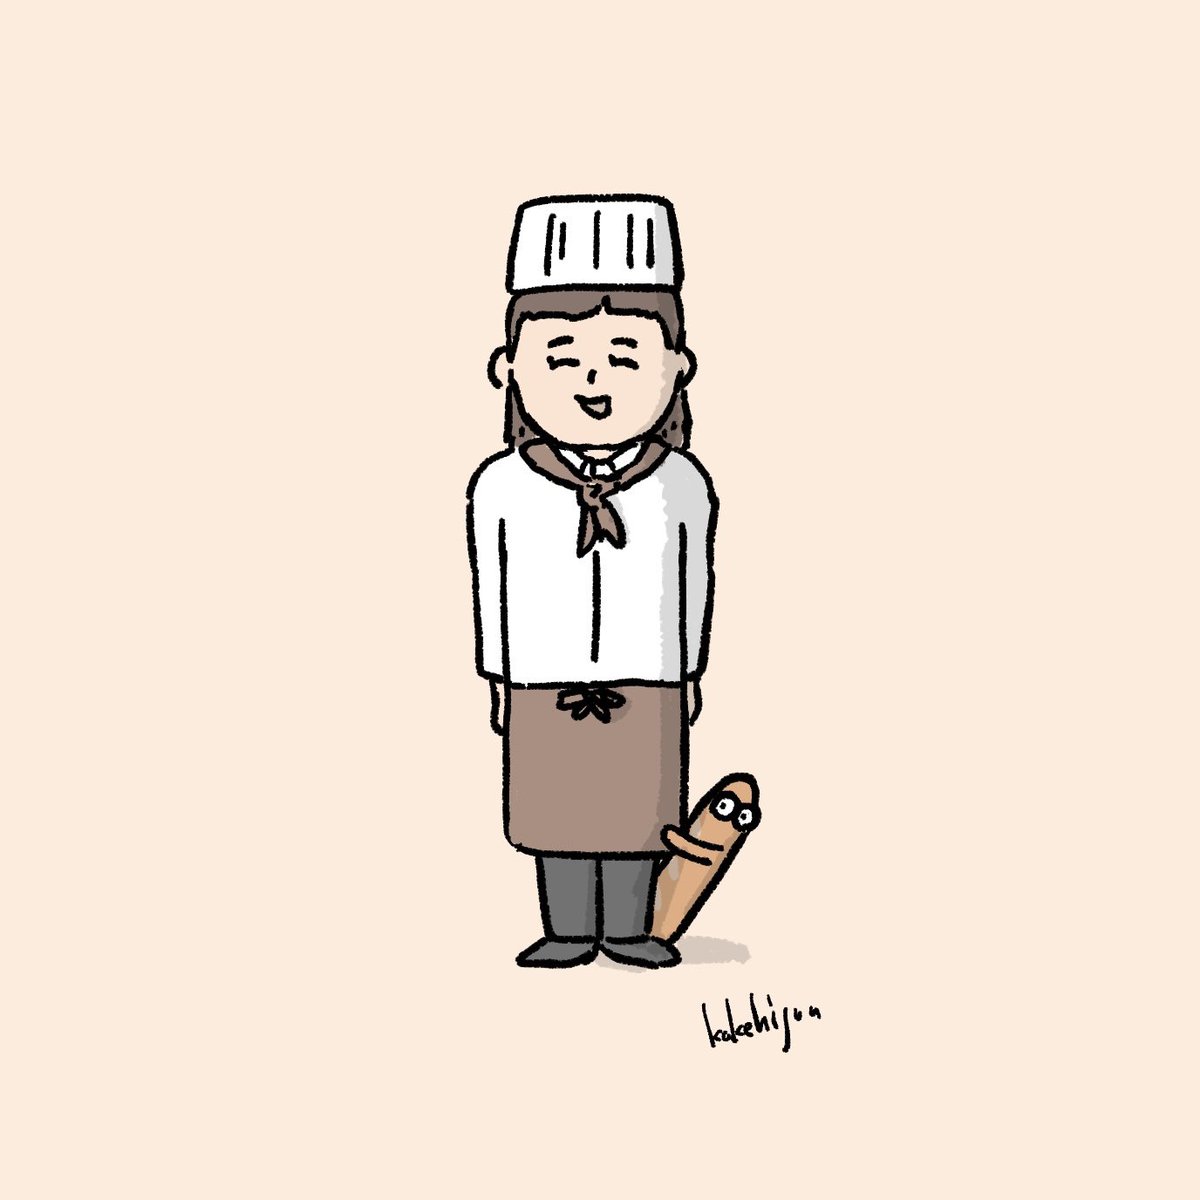 「パン屋さんと産まれたてのフランスパン」|カケヒジュン@イラストレーターのイラスト